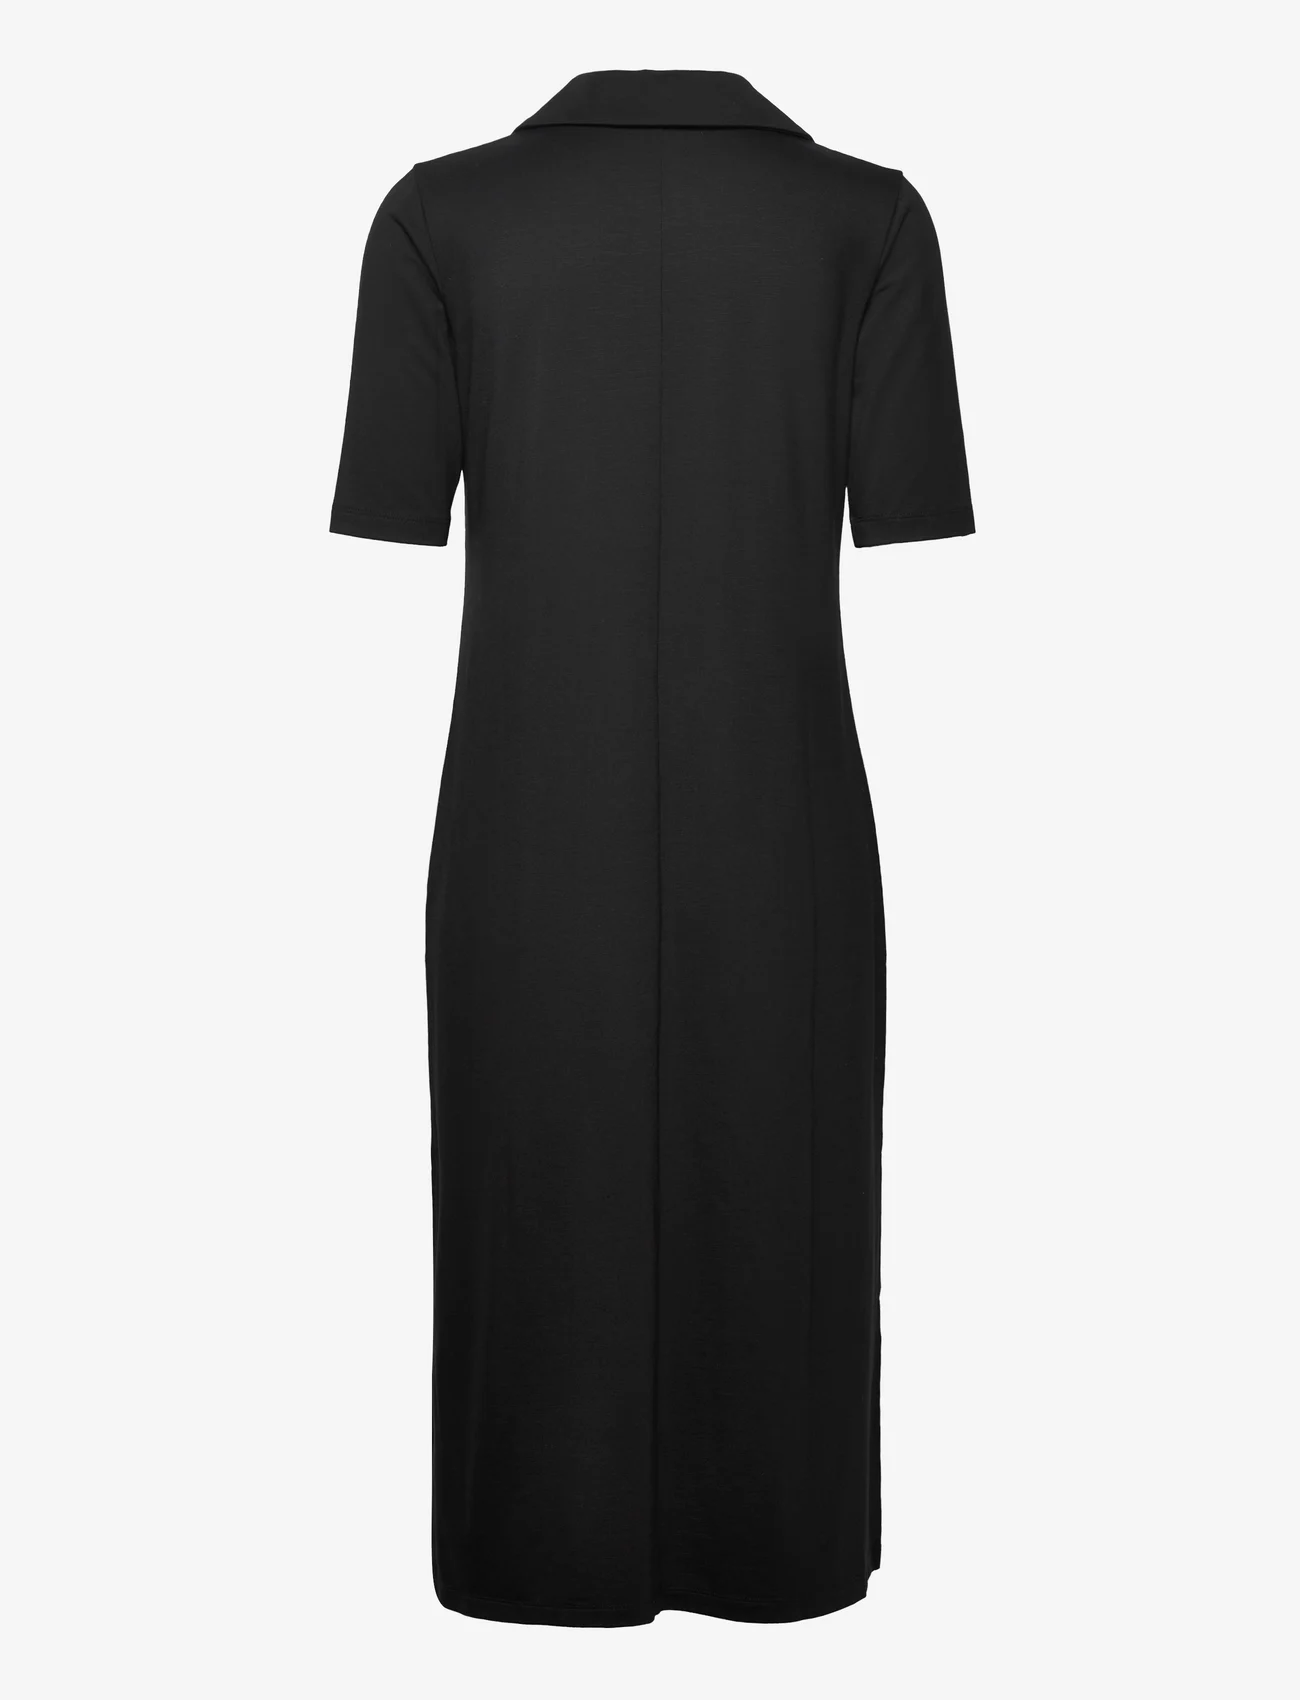 Residus - TOBEI DRESS - stickade klänningar - black - 1